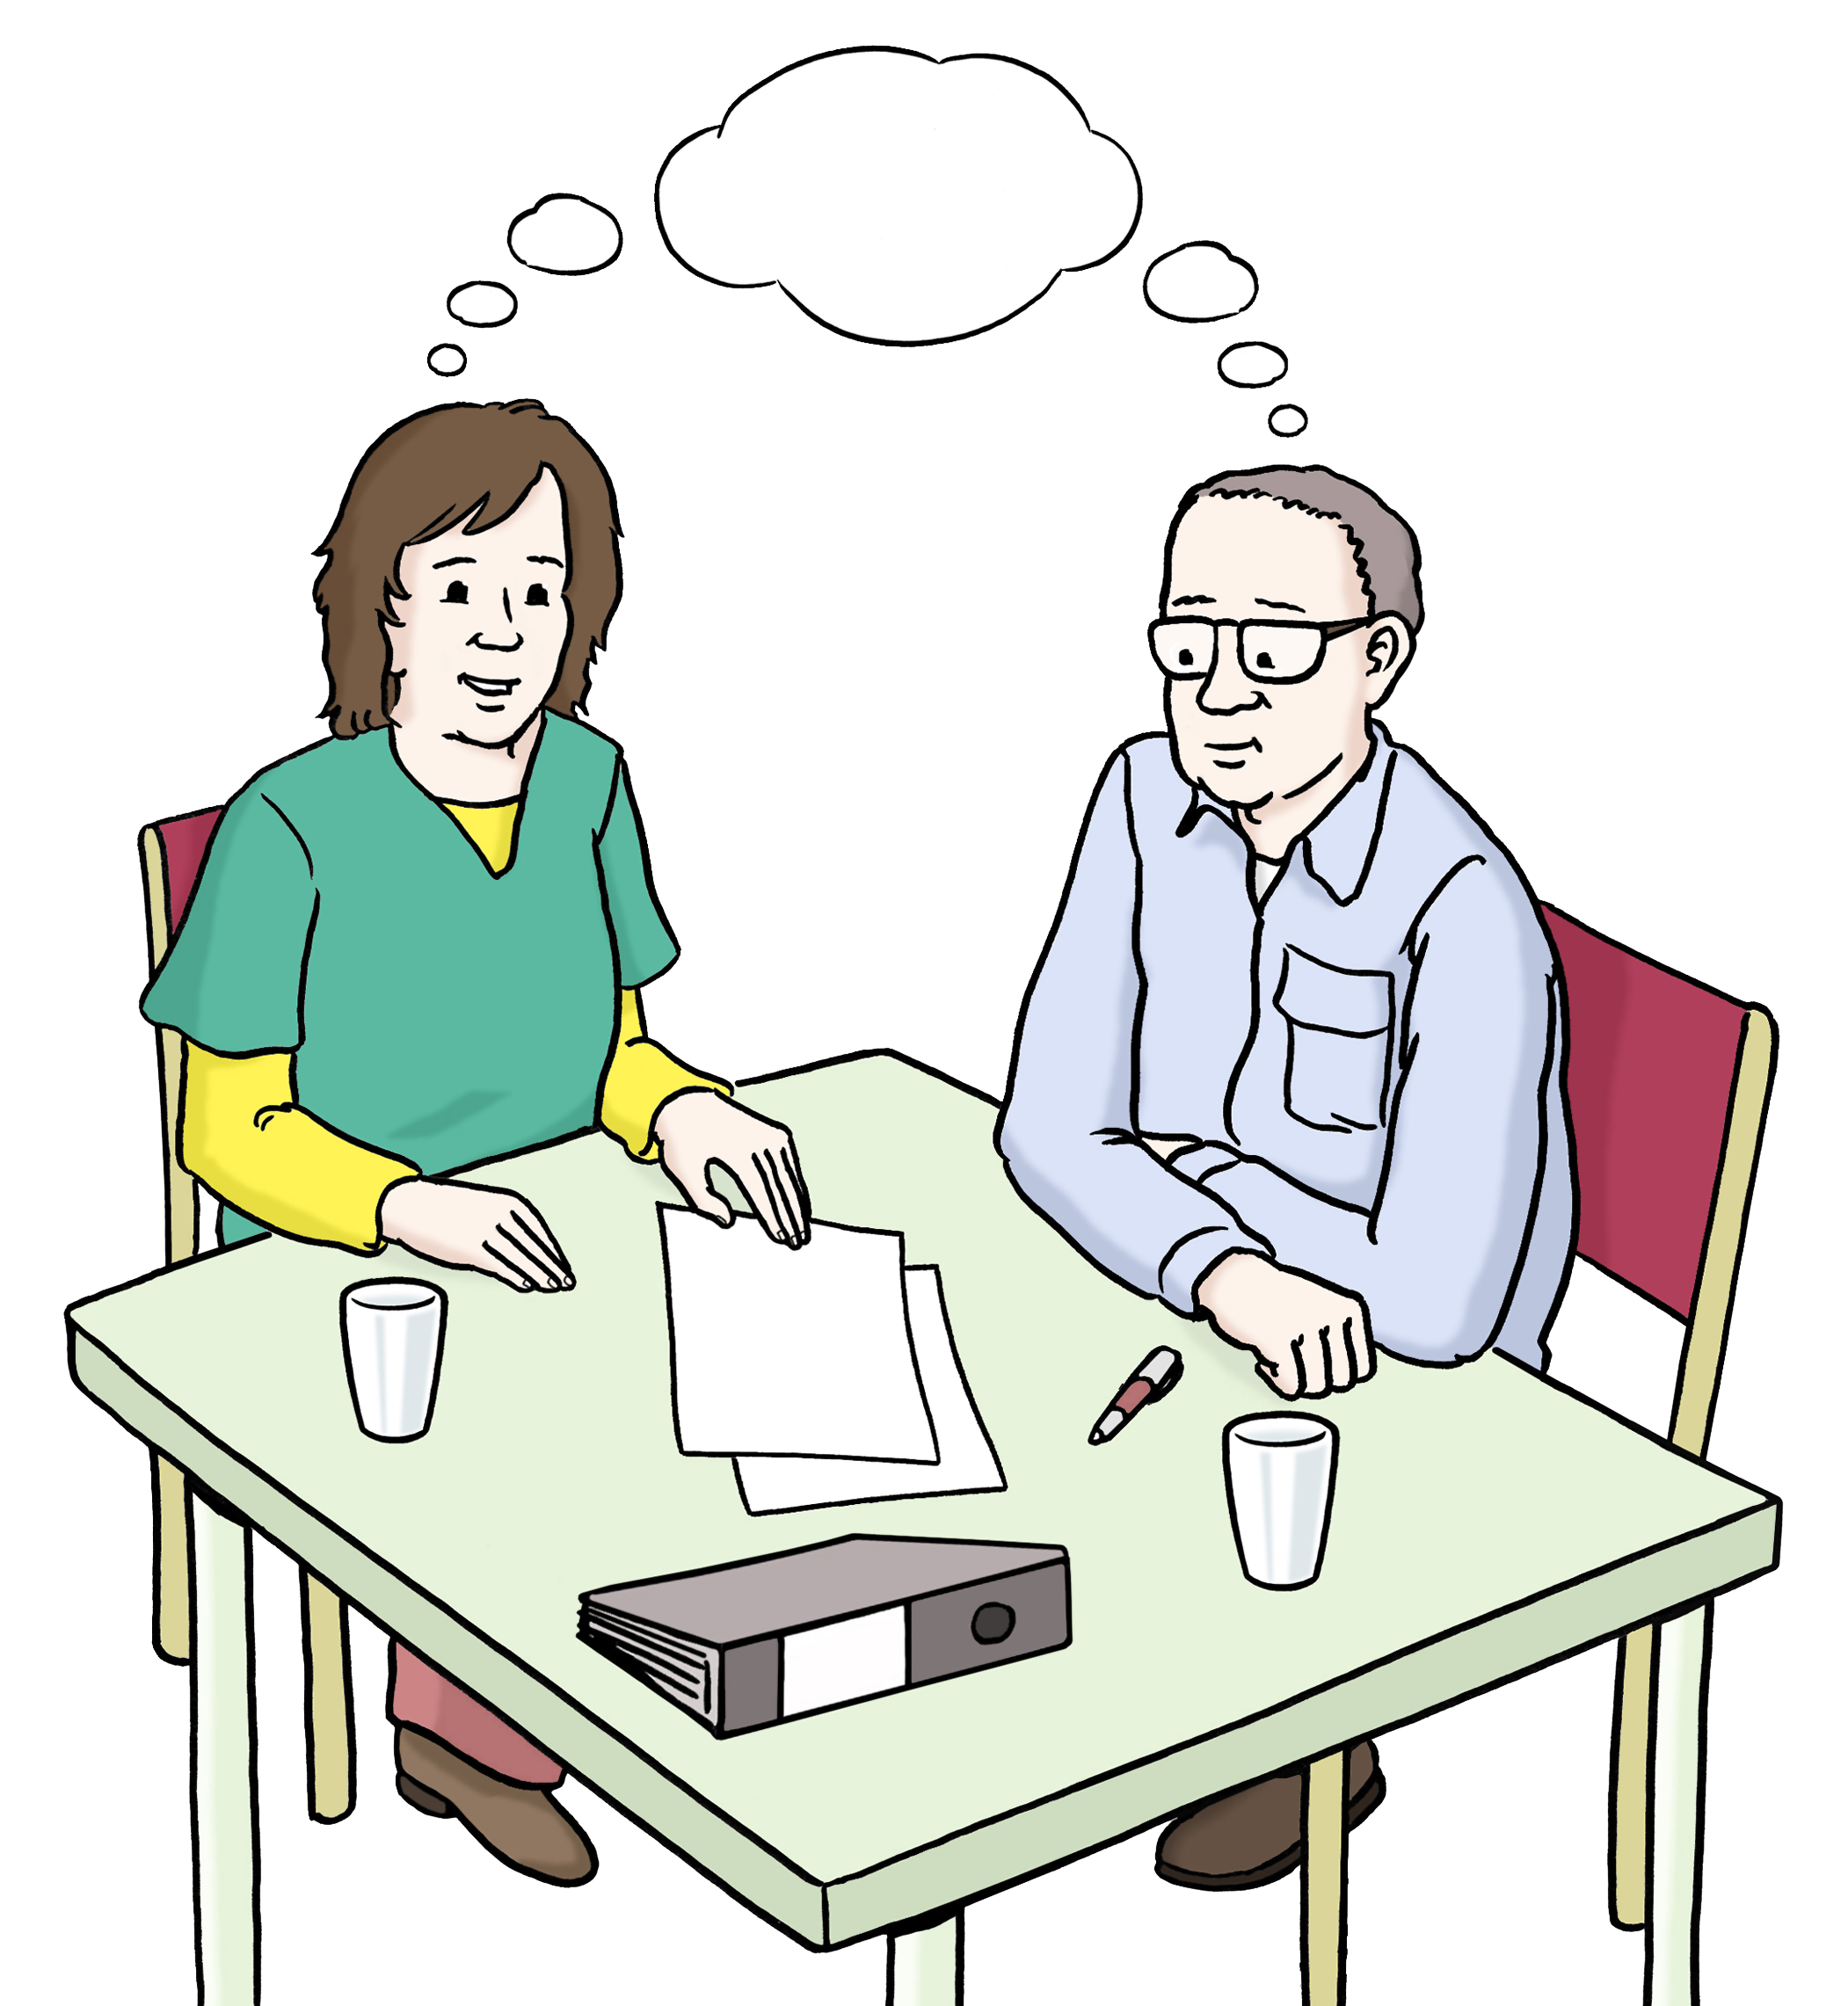 Bildbeschreibung: Zwei Personen sitzen an einem Tisch und denken nach. Auf dem Tisch ist Notizpapier, ein Stift und ein Ordner.